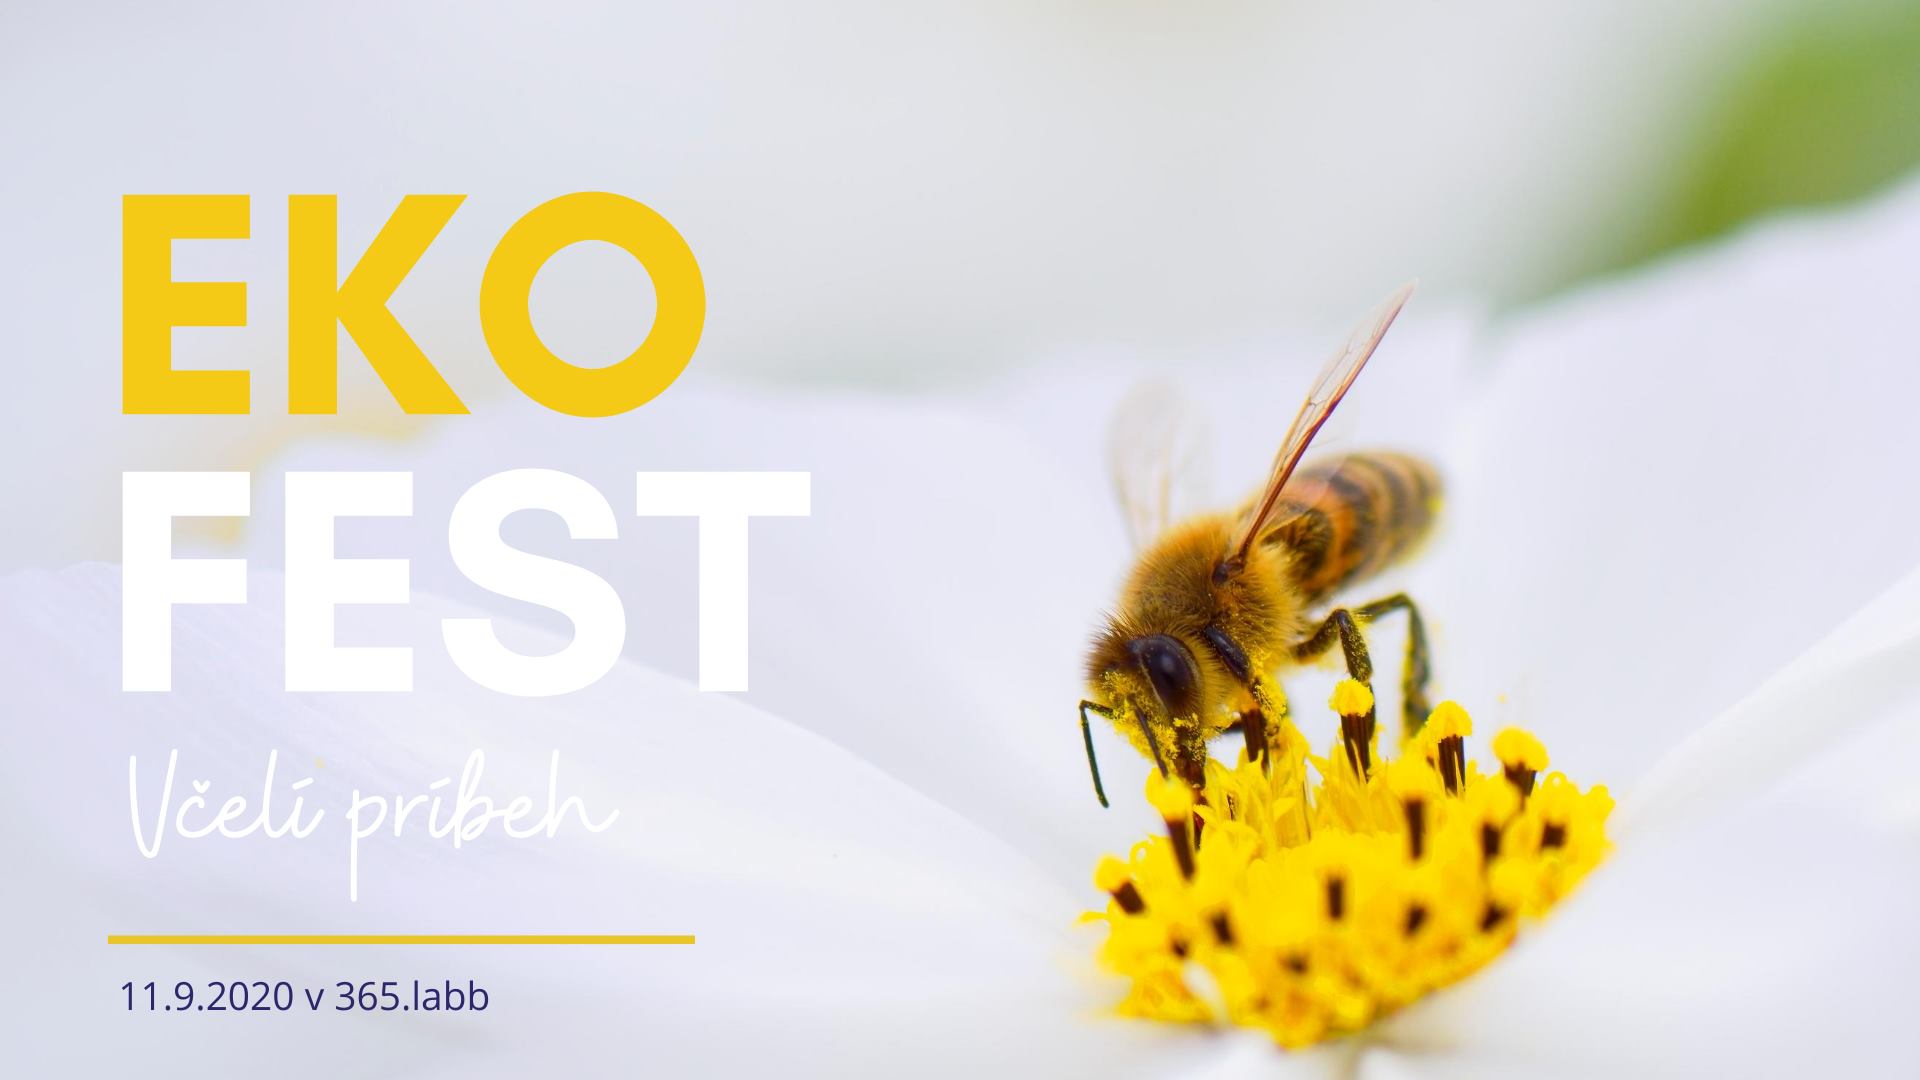 EKO FEST - Včelí príbeh 365.labb